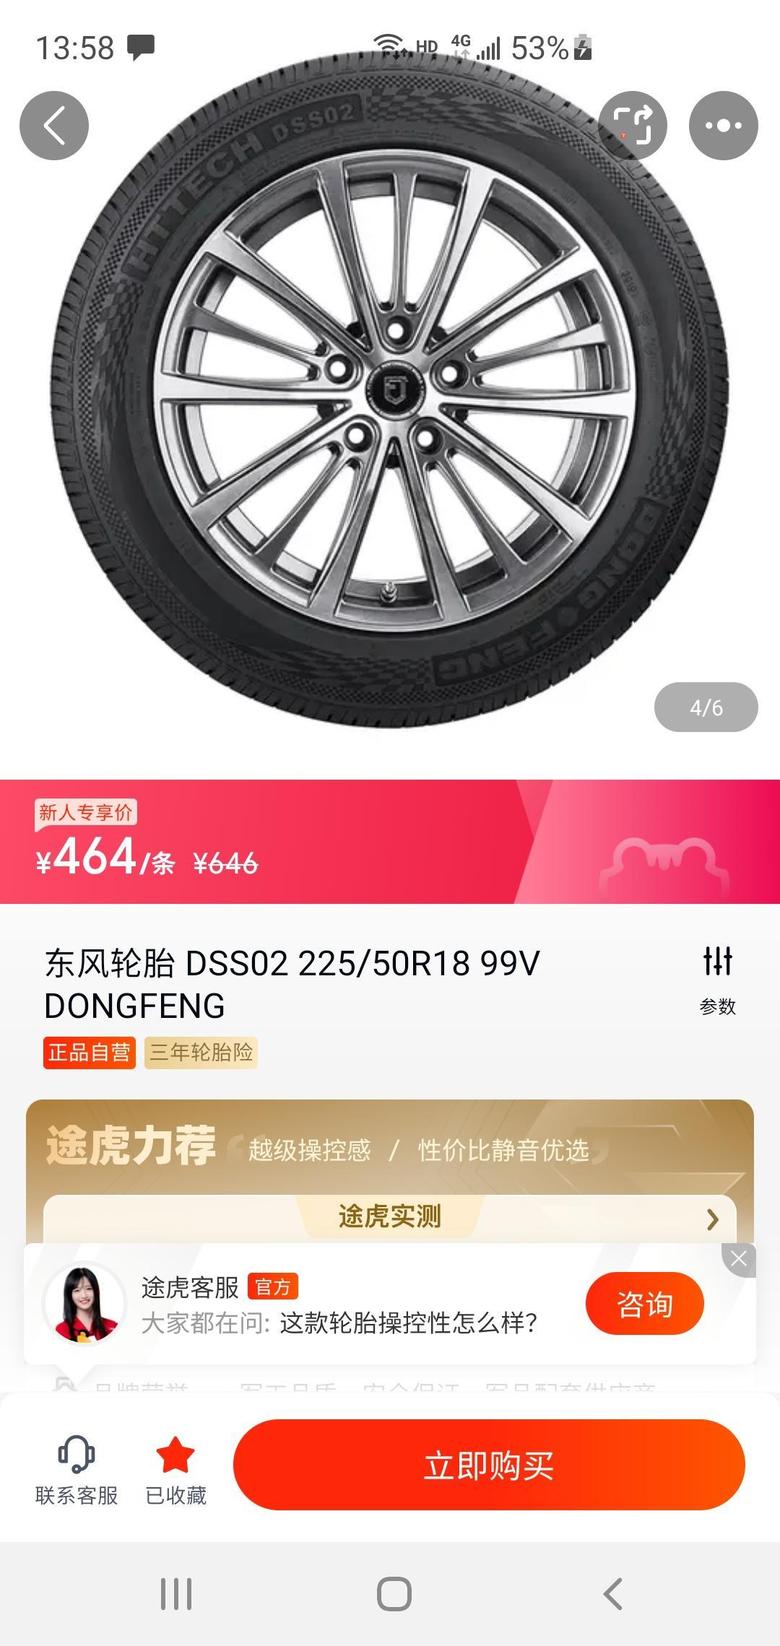 力狮 打算换轮胎在途虎看到这个轮胎价格好便宜有谁在途虎换过轮胎的嘛？